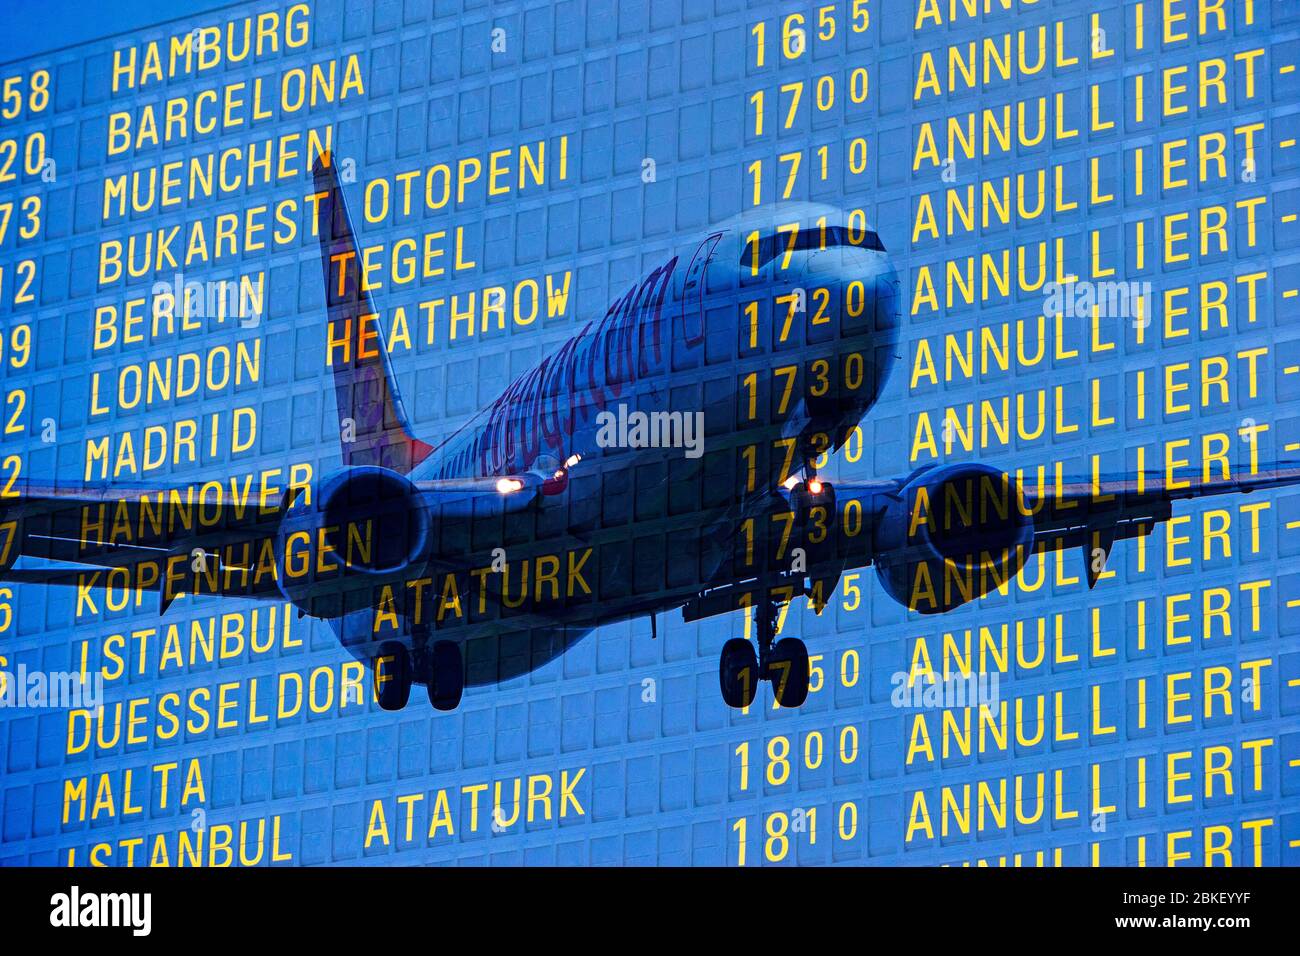 PHOTO MONTAGE, arrivée et départ à l'aéroport, annulations de départ, vols annulés en raison de la crise de Corona Banque D'Images